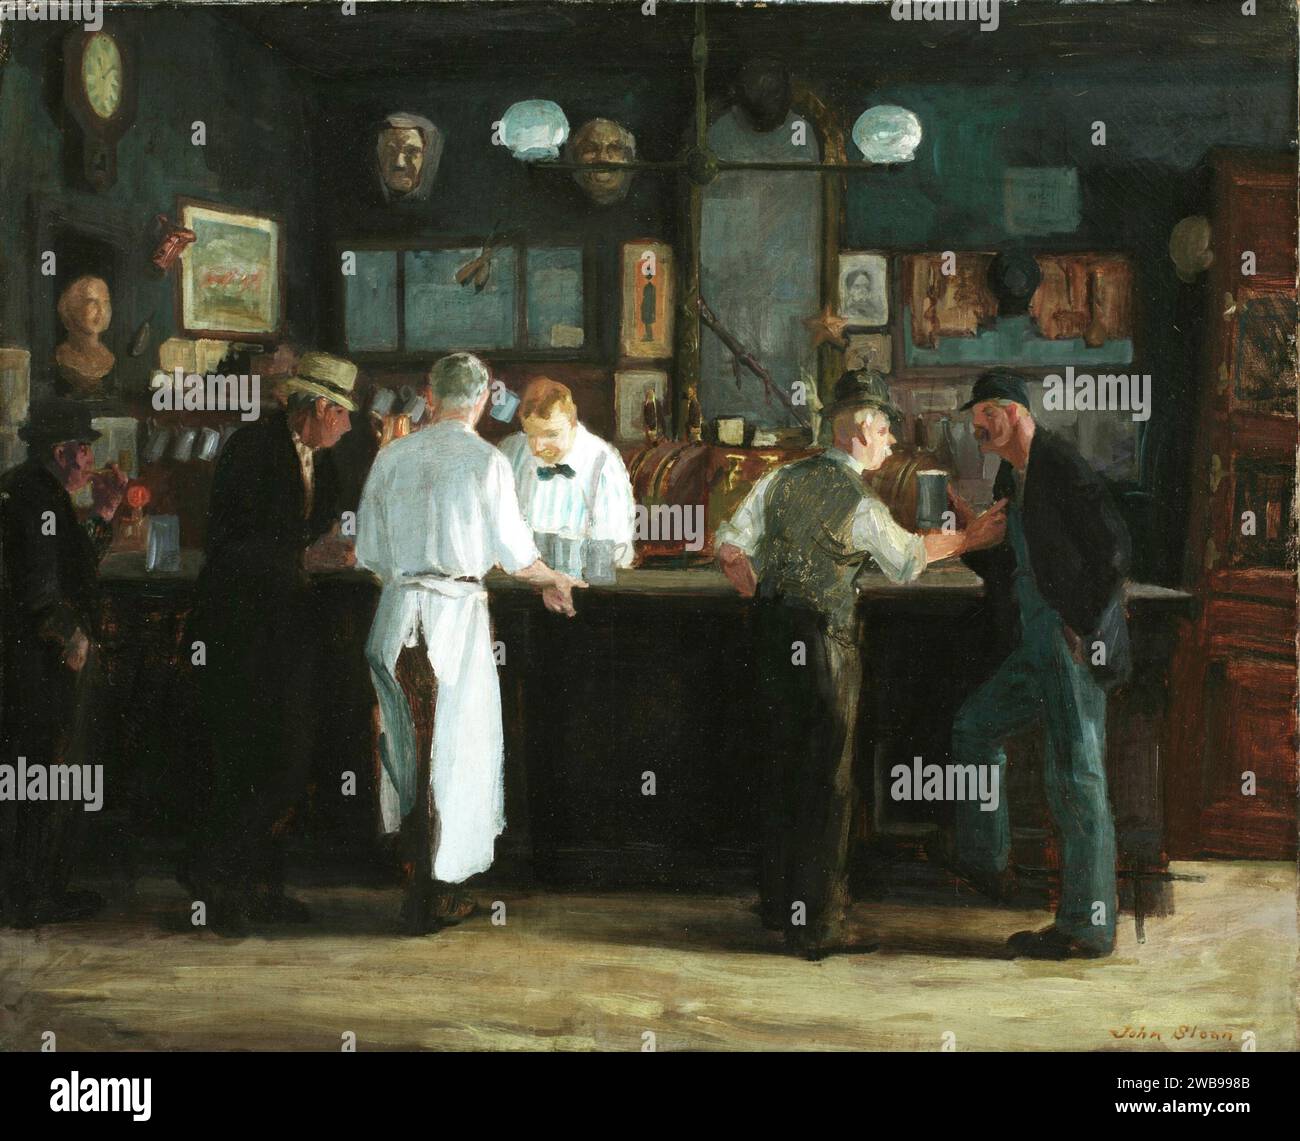 John Sloan - McSorley's Bar - 1912 Stock Photo